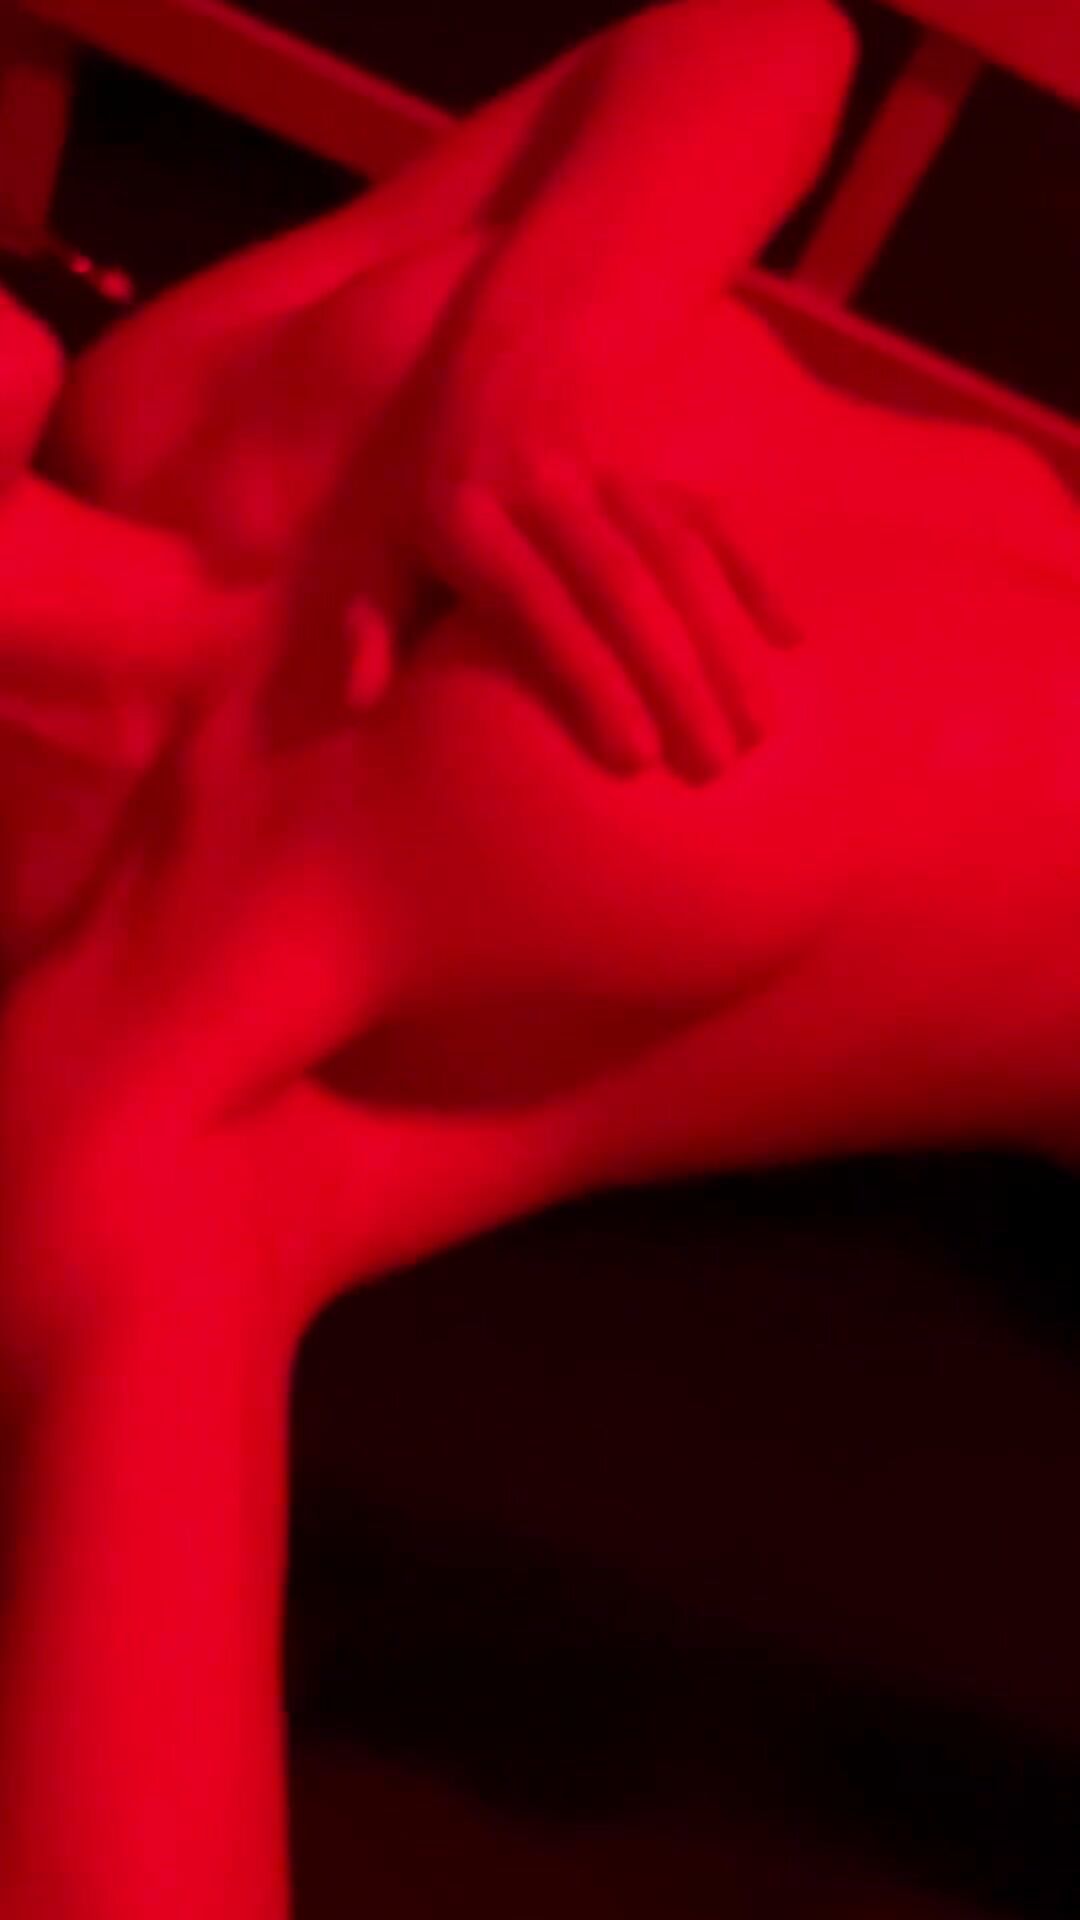 1080px x 1920px - Amanda cerny nude 2 - Thothub